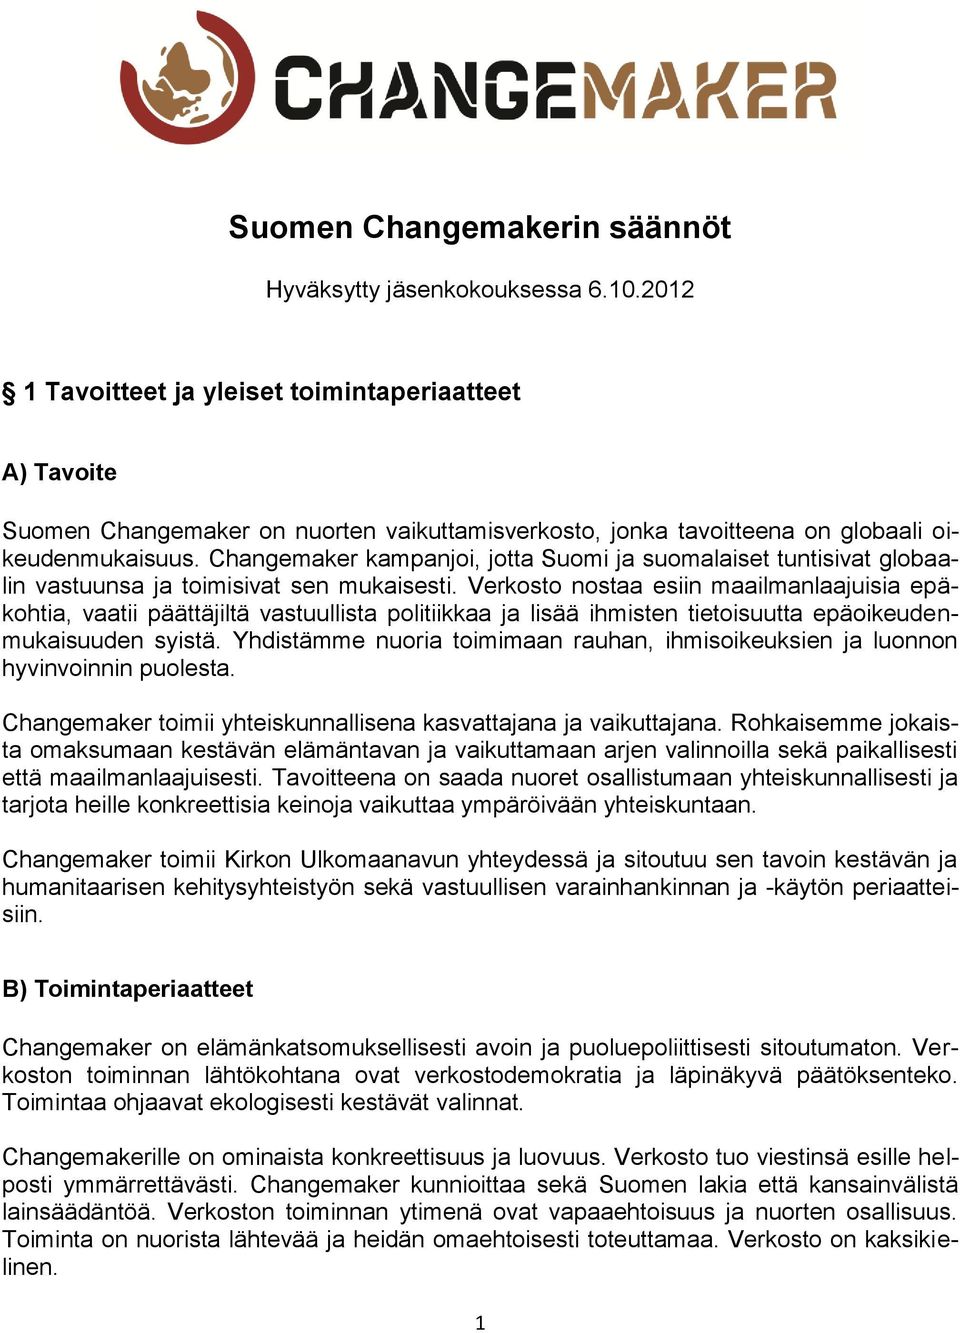 Changemaker kampanjoi, jotta Suomi ja suomalaiset tuntisivat globaalin vastuunsa ja toimisivat sen mukaisesti.